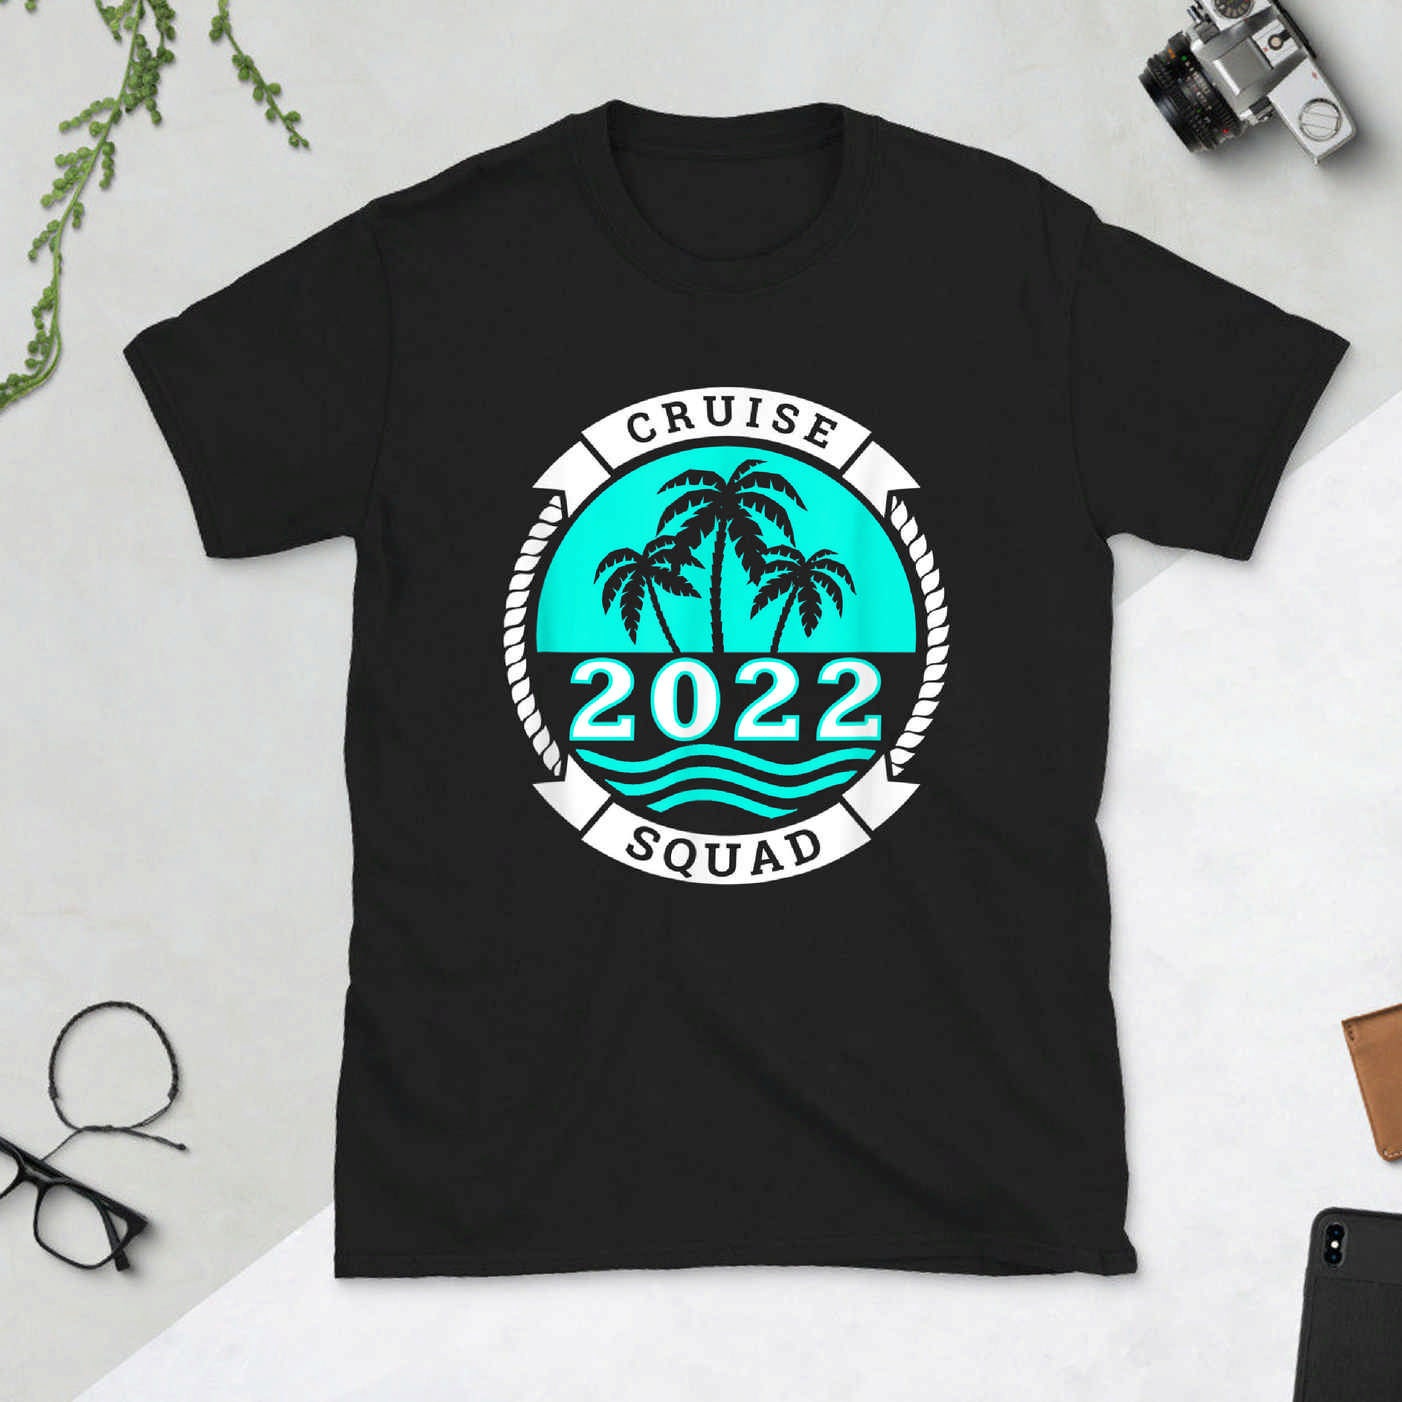 Cruise Squad 2022 Family Cruise T-shirt b09rvjphzt - Etsy